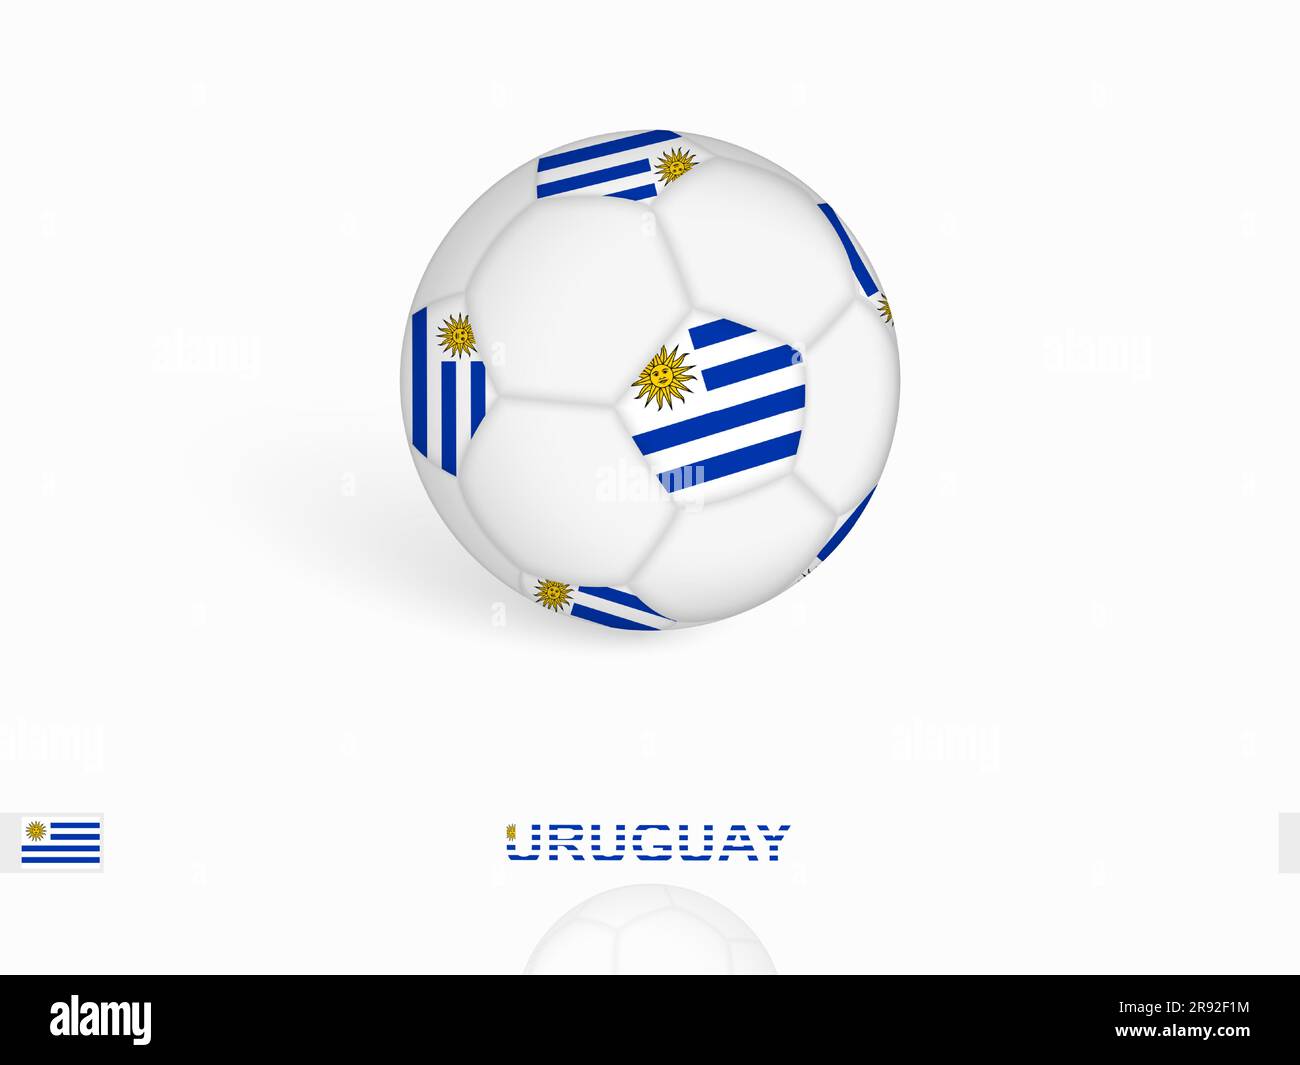 Antecedentes De La Selección Uruguay Con Vista Superior De Pelota Y Bandera  Stock de ilustración - Ilustración de escuela, ventilador: 259969773